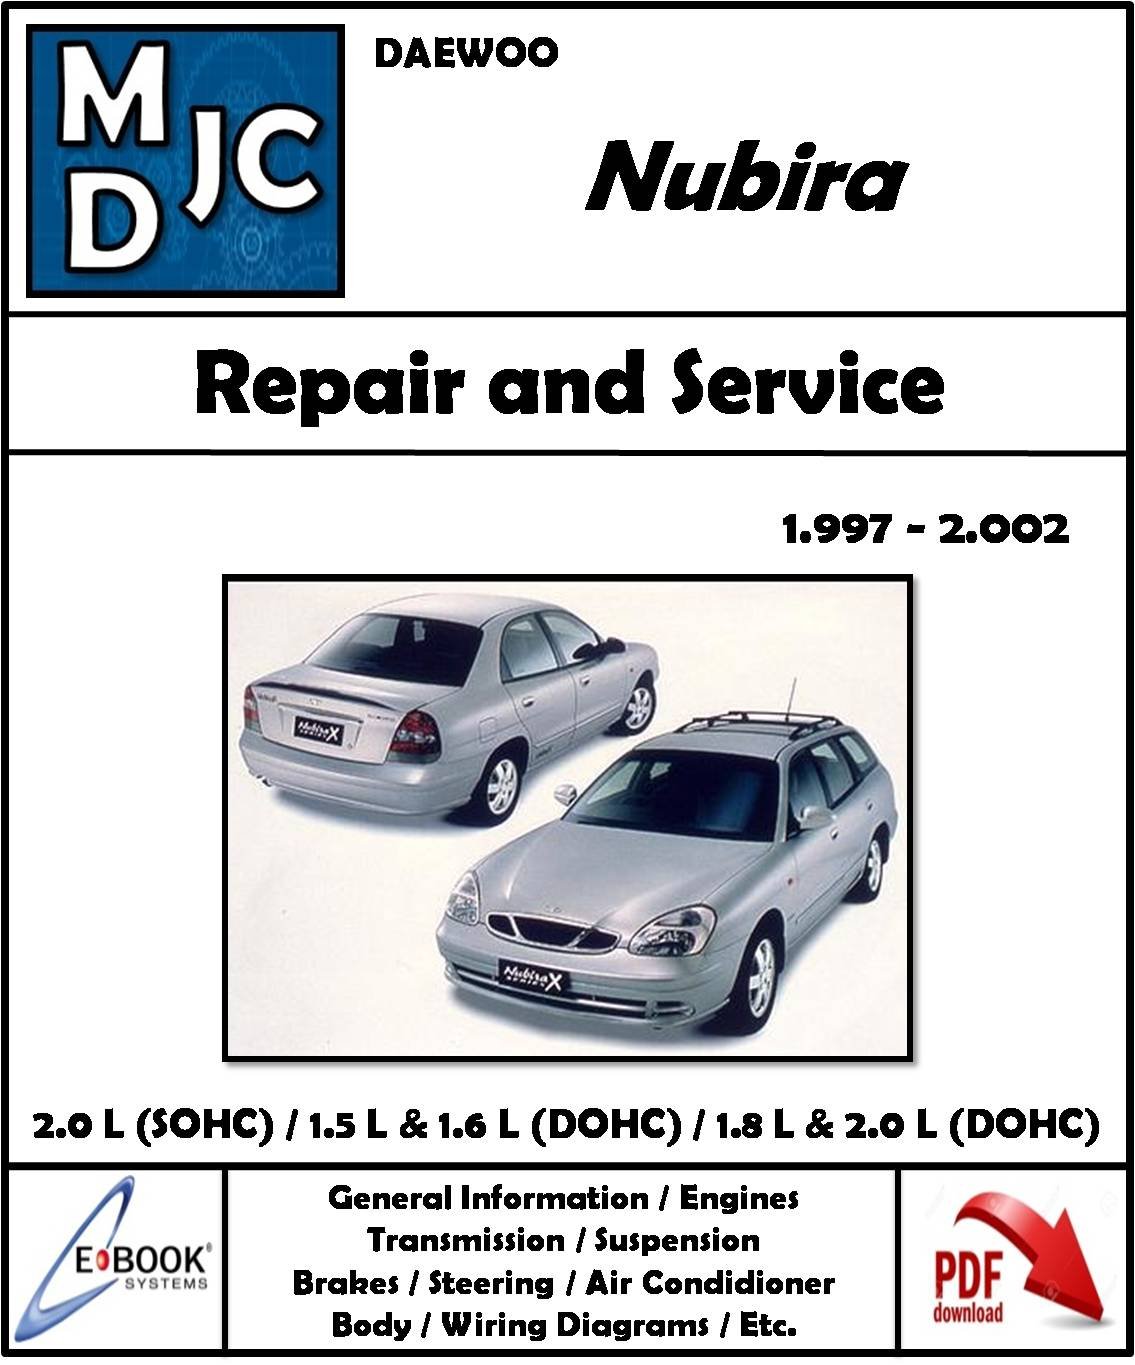 Manual de Taller Daewoo Nubira 1997-2002